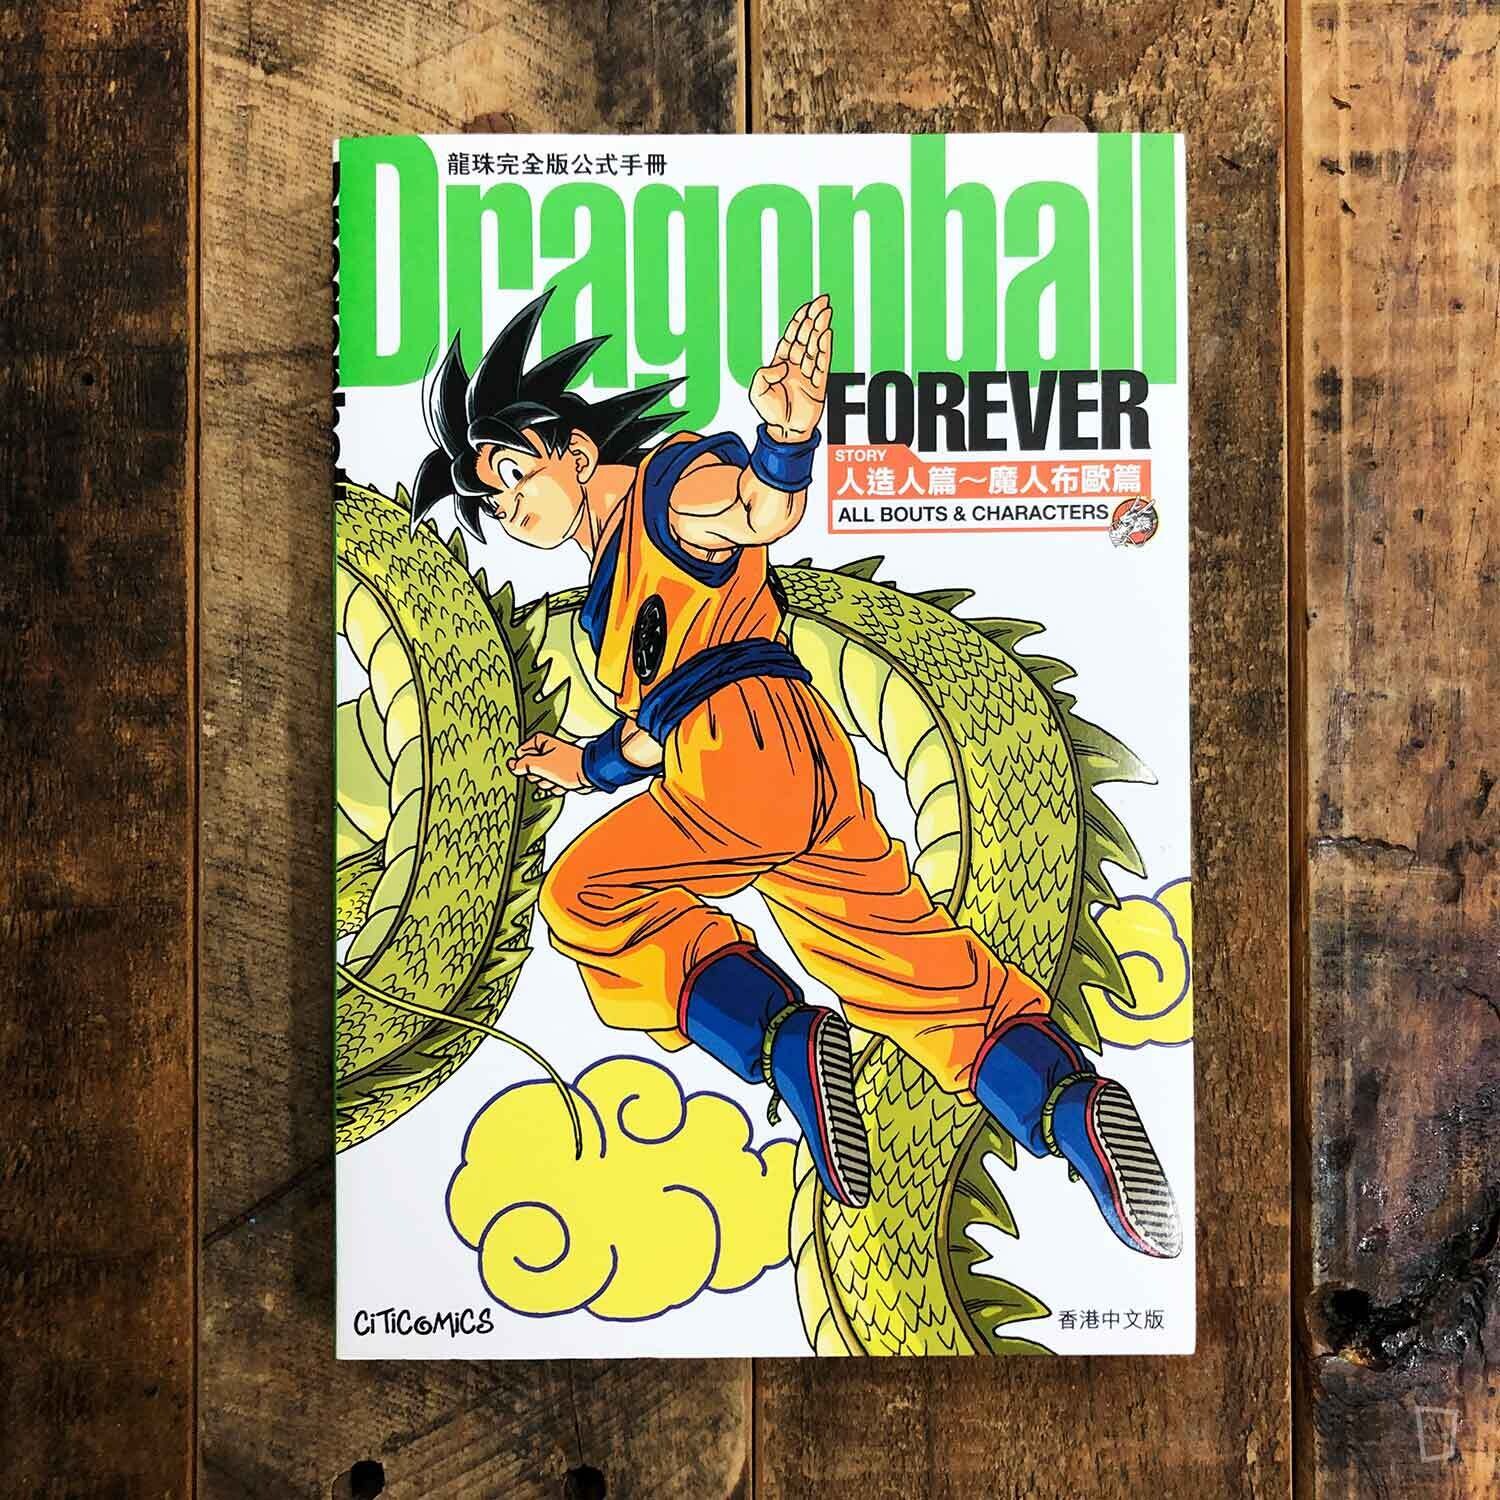 鳥山明《龍珠 Dragonball FOREVER》（人造人篇～魔人布歐篇）完全版公式手冊